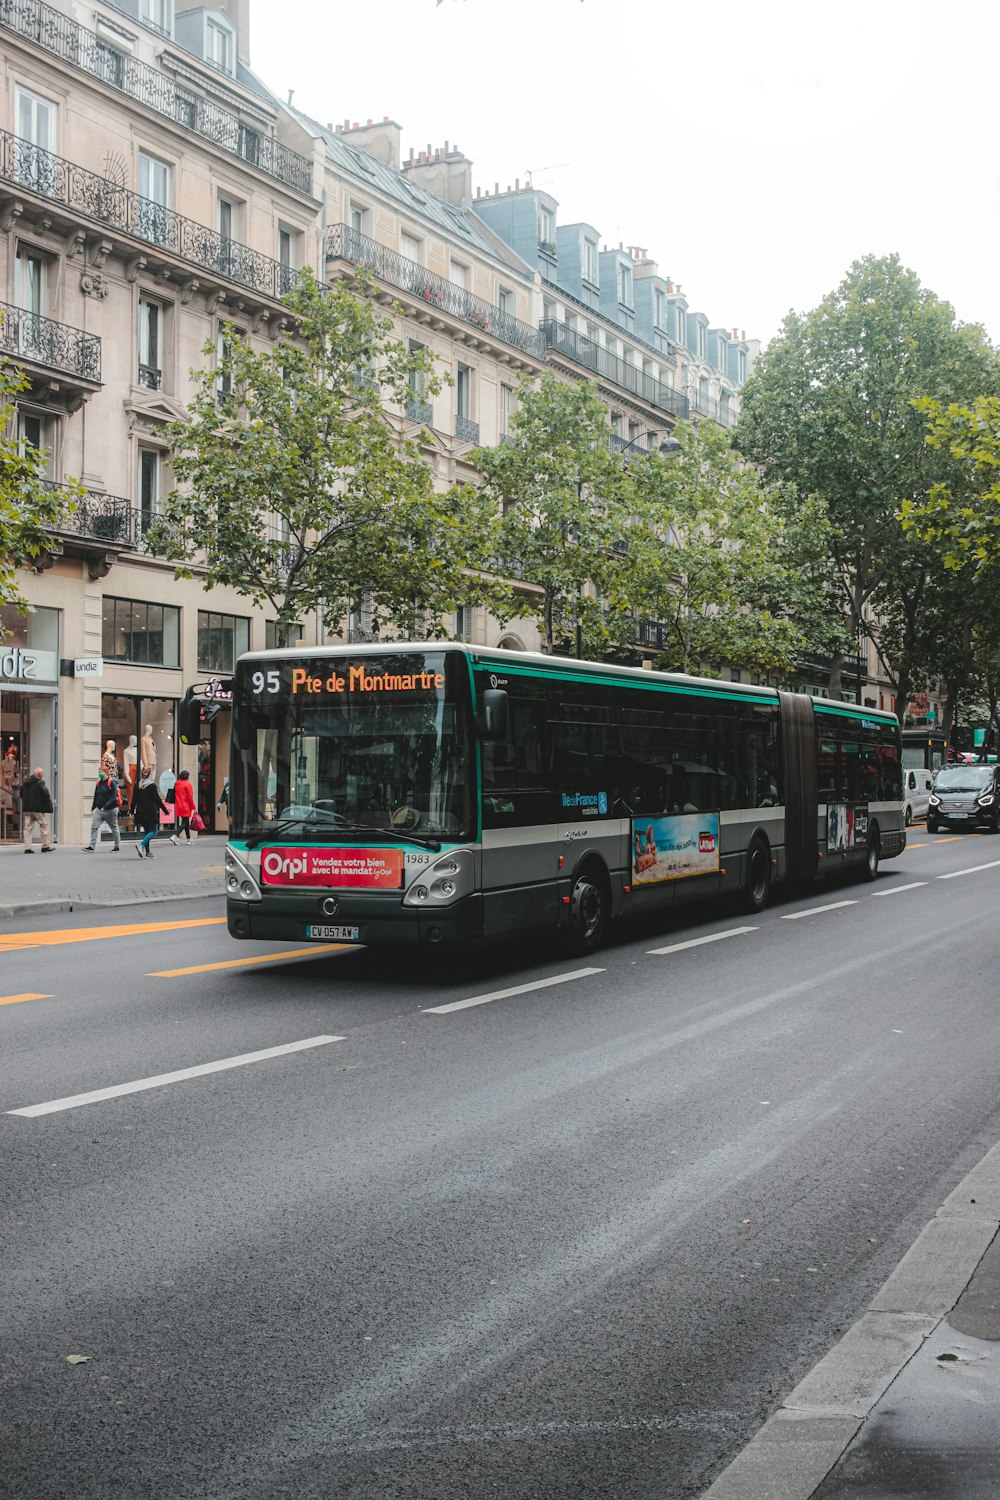 roter und grüner Bus tagsüber auf der Straße